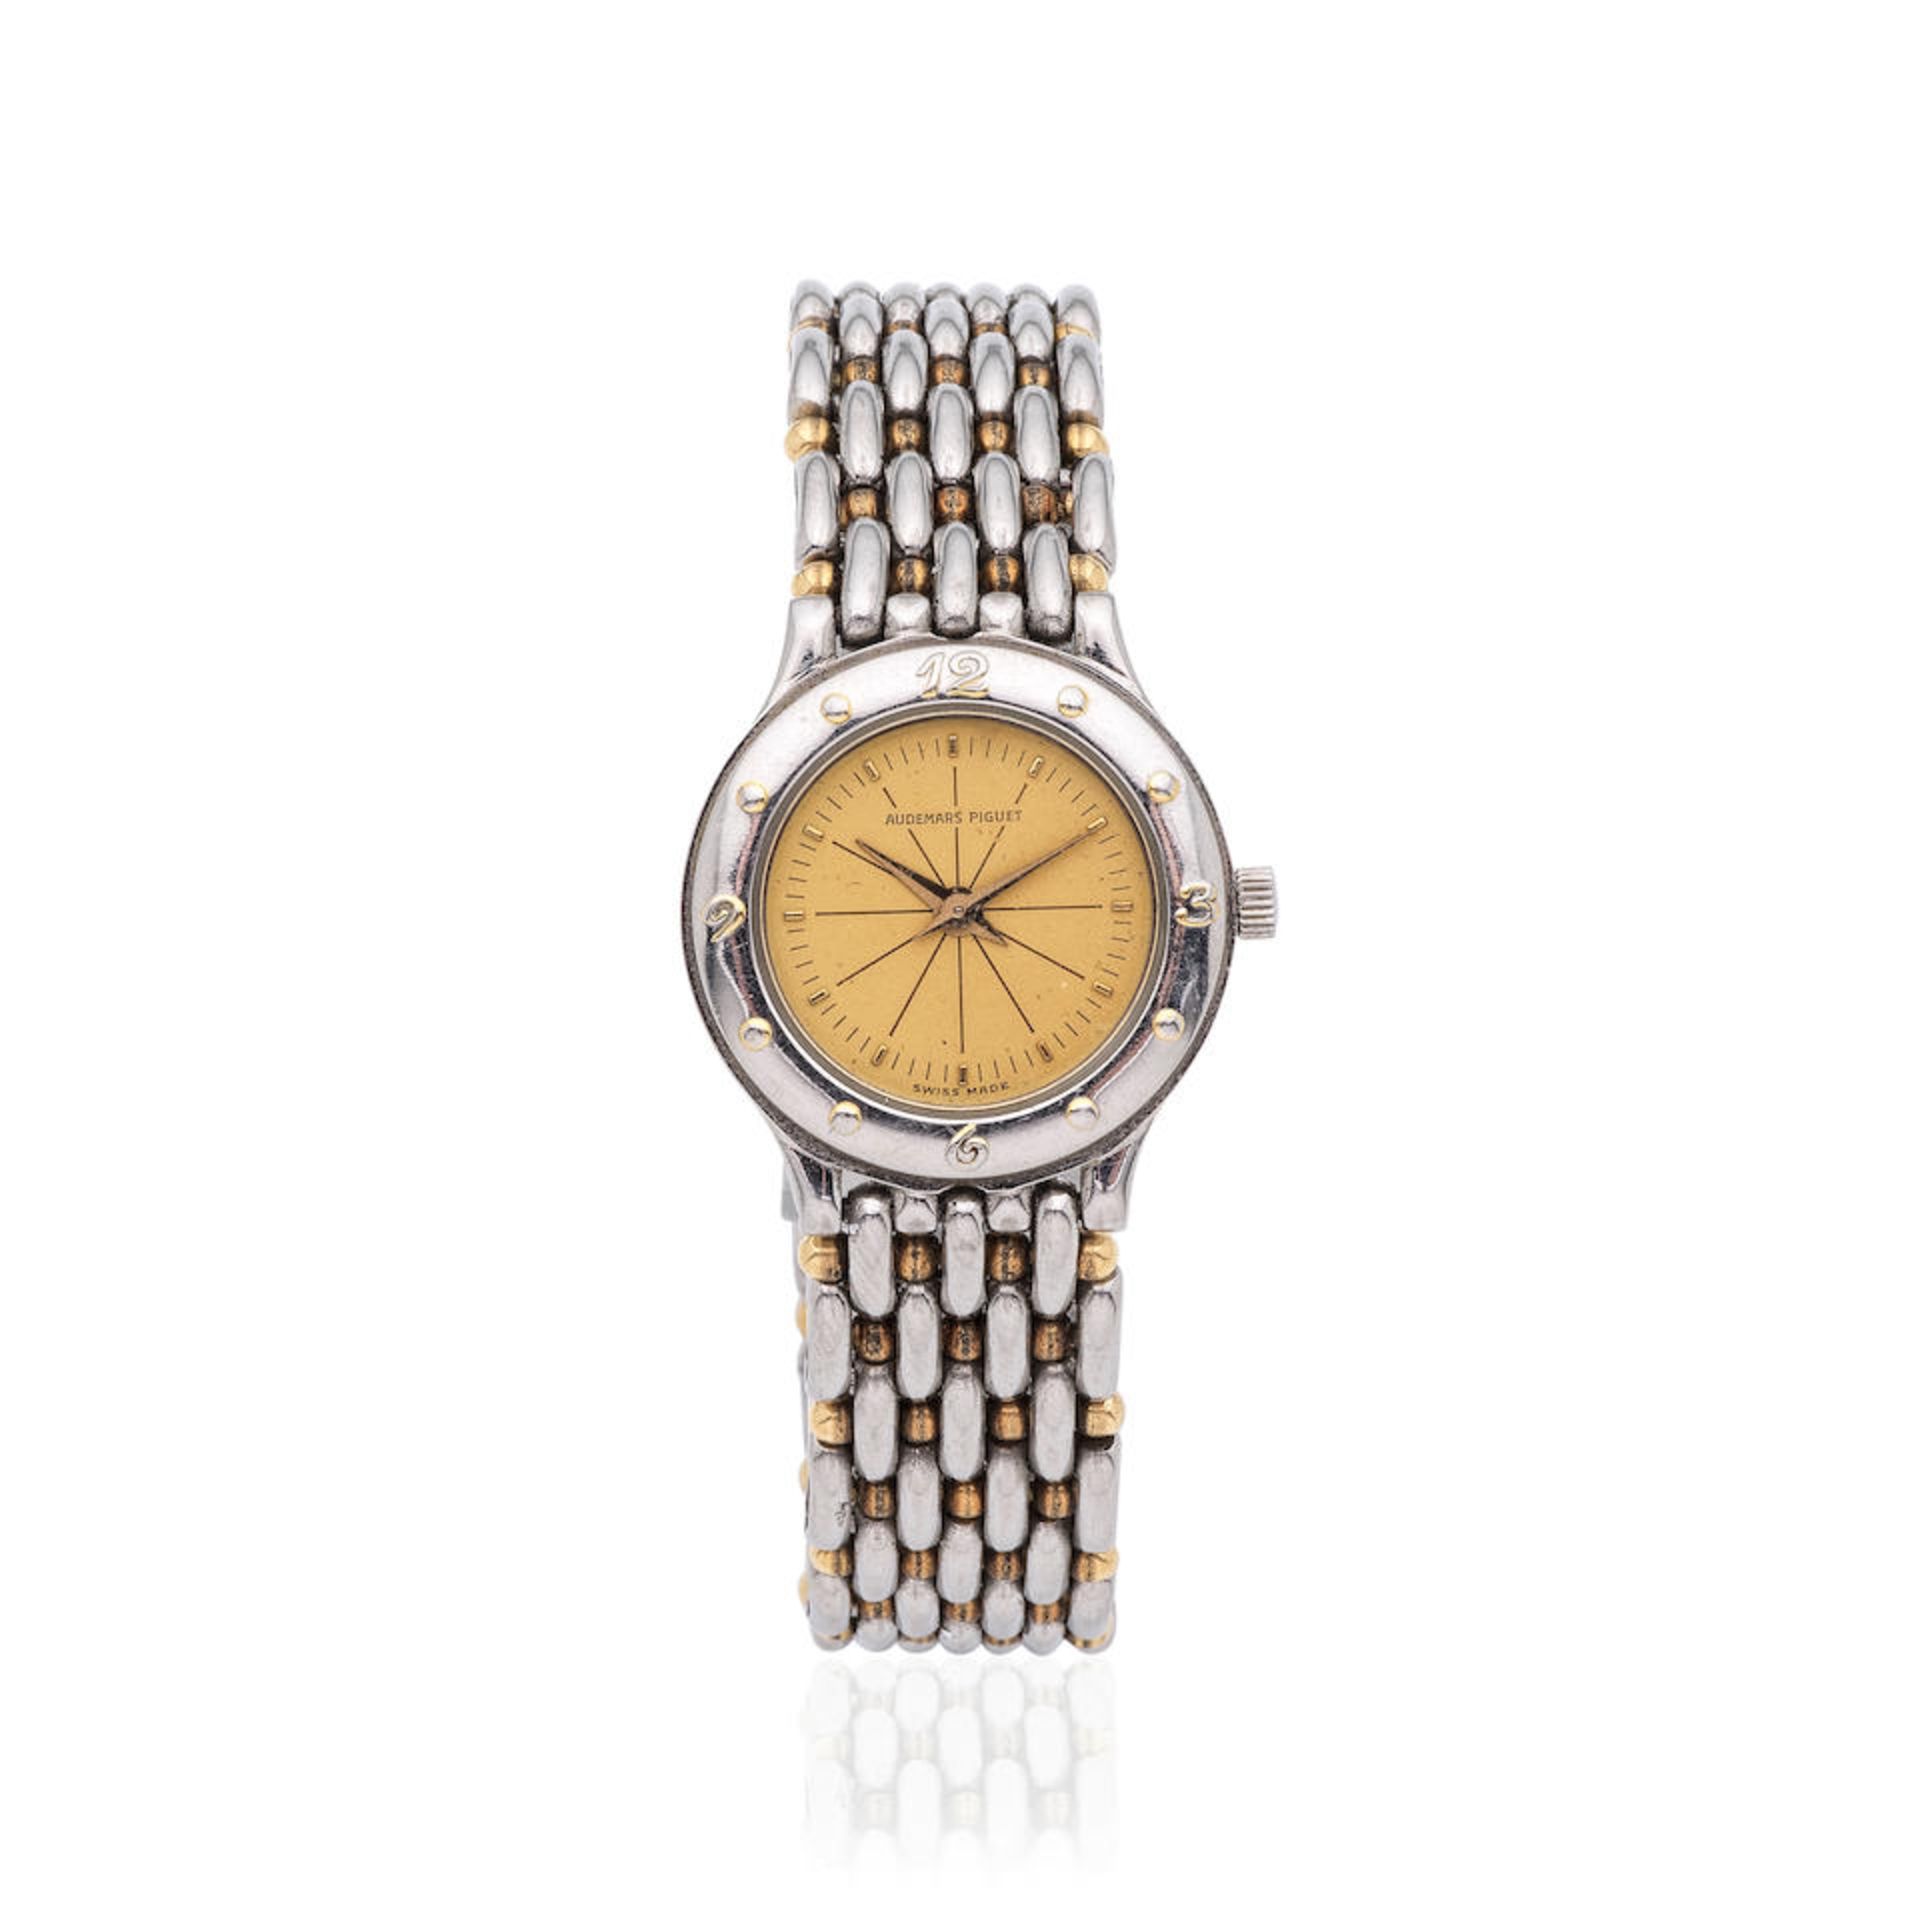 Audemars Piguet. A stainless steel and 18K gold quartz bracelet watch Audemars Piguet. Montre br...